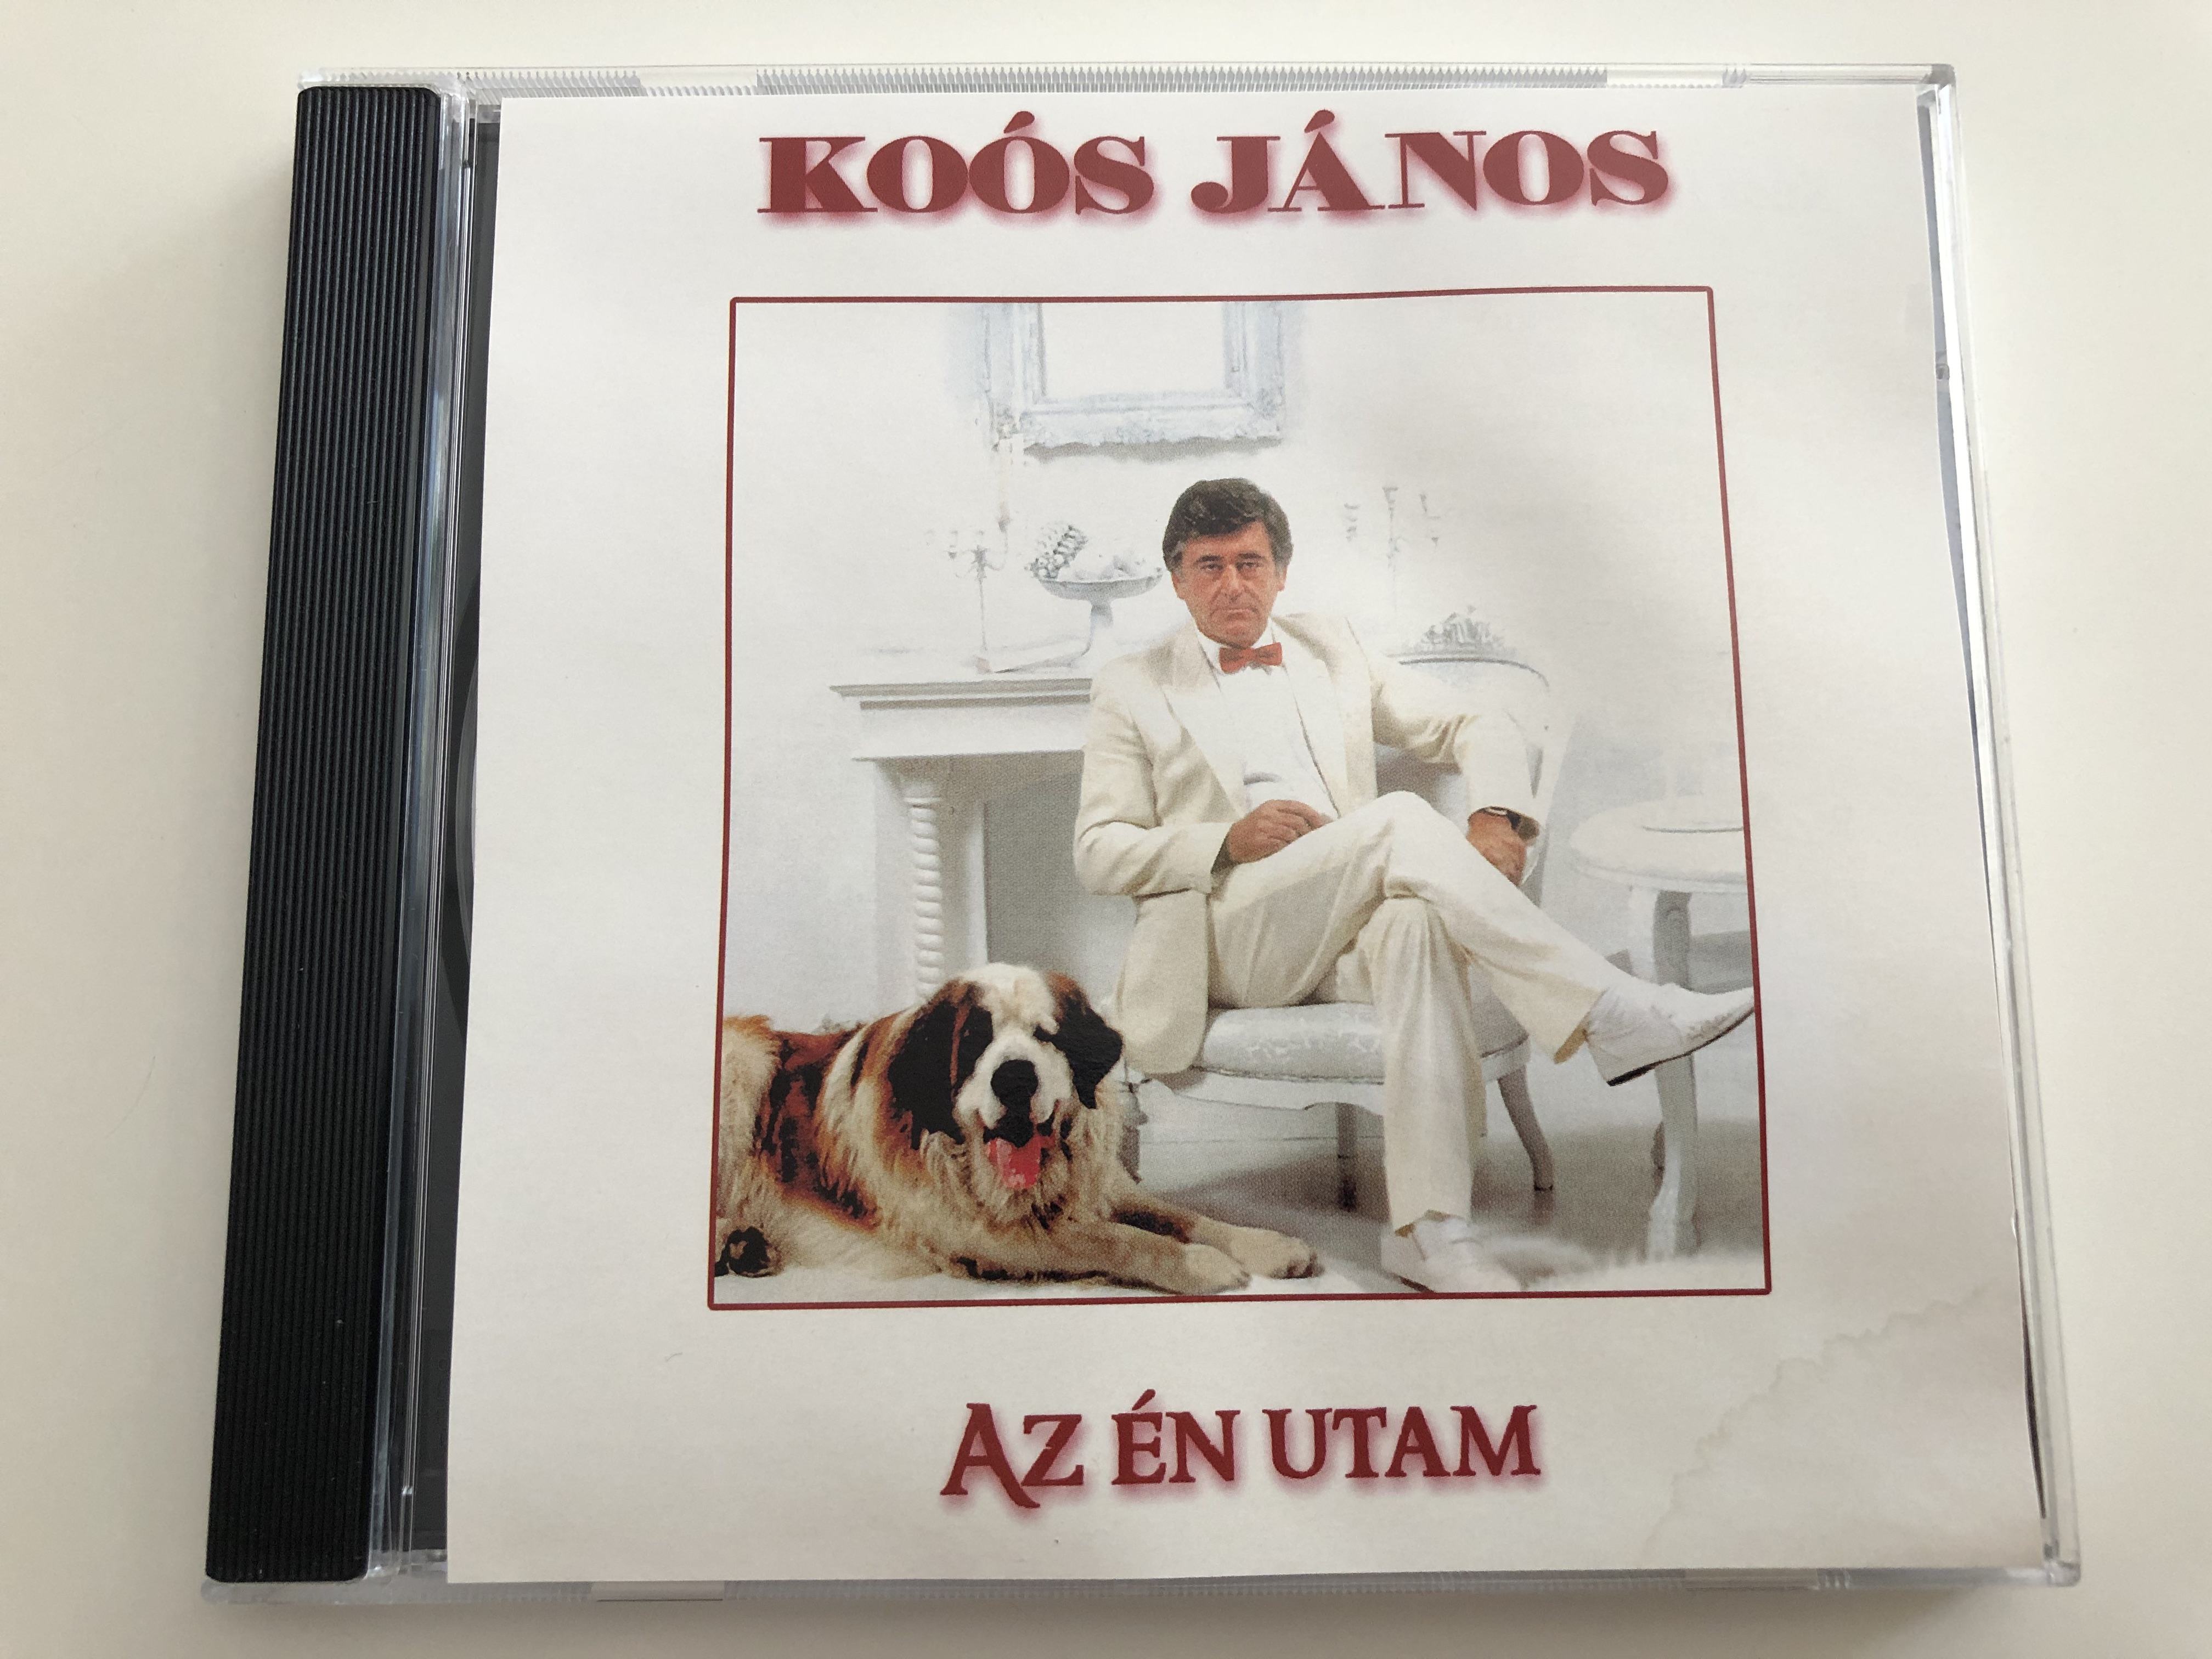 ko-s-j-nos-az-n-utam-audio-cd-07222-rnr-1-.jpg